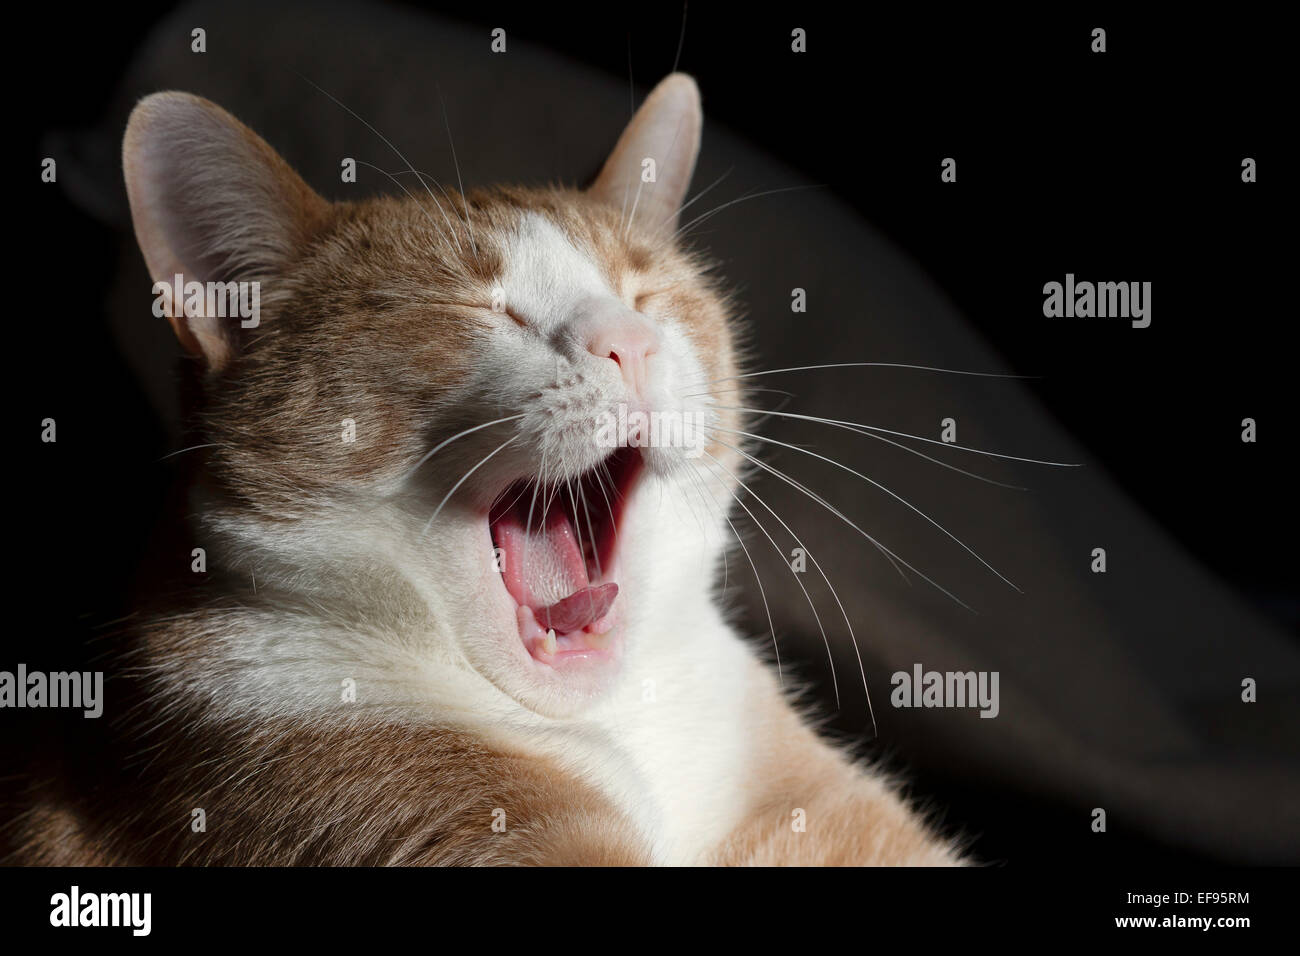 Yawning cat Stock Photo